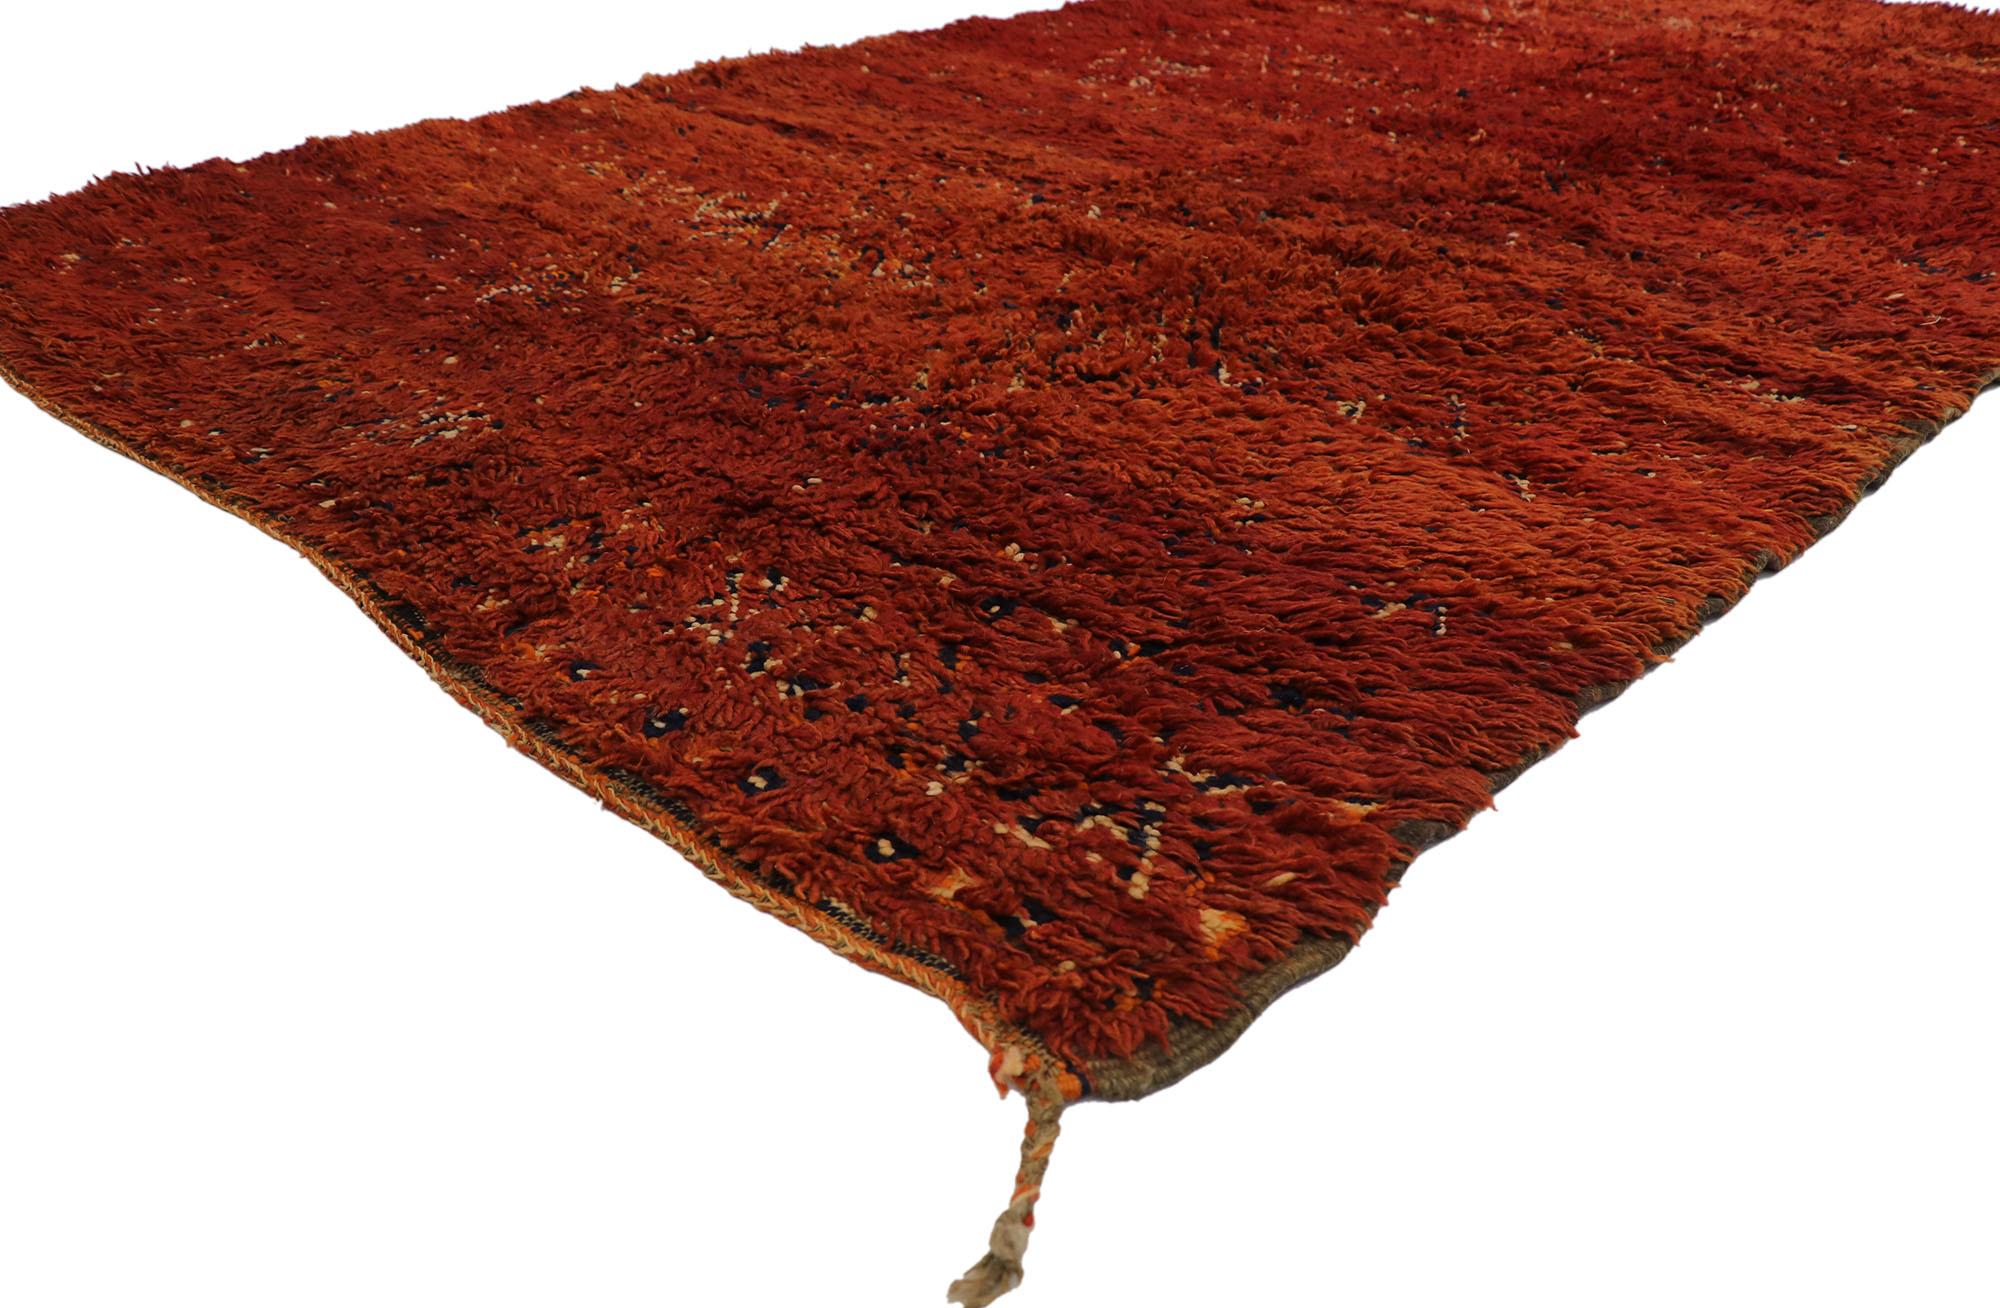 21307 Vintage Beni MGuild Marokkanischer Teppich, 06'01 x 12'05. Dieser handgeknüpfte marokkanische Beni M'Guild-Teppich aus Wolle versprüht nomadischen Charme mit unglaublichen Details und Texturen und ist eine fesselnde Vision gewebter Schönheit.